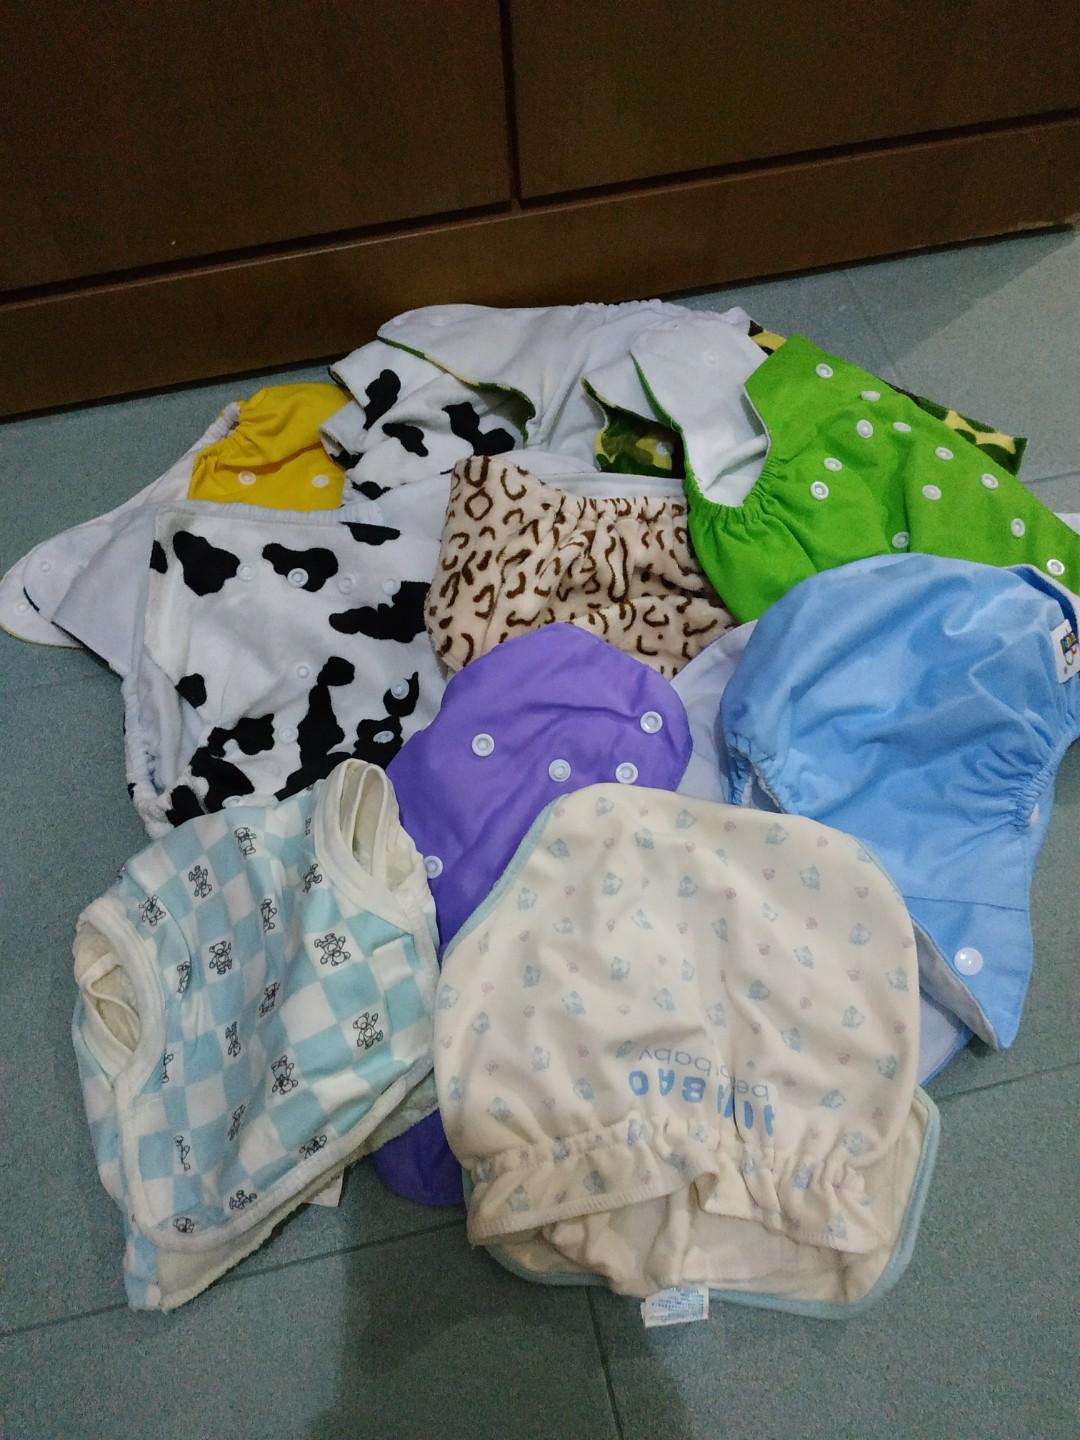 cloth diaper set